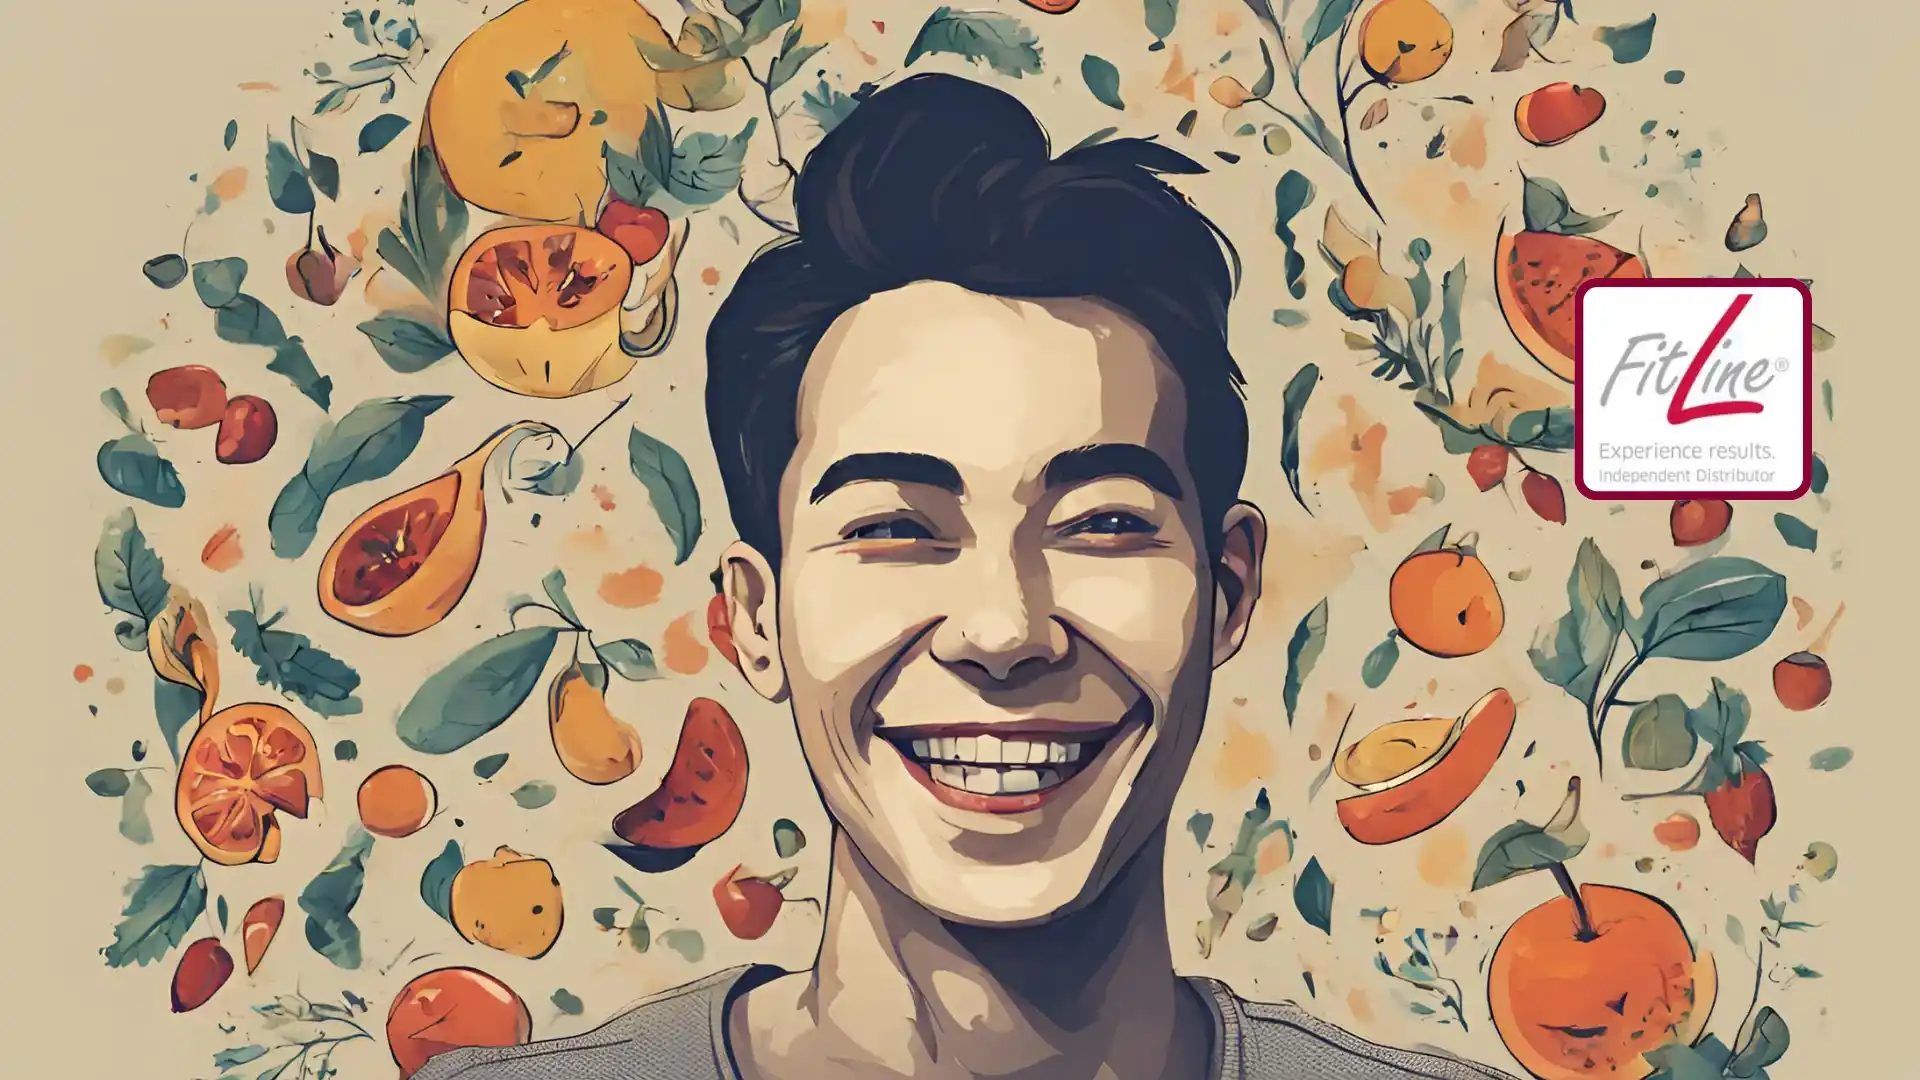 Hombre sonriendo con frutas frescas alrededor y logotipo de FitLine